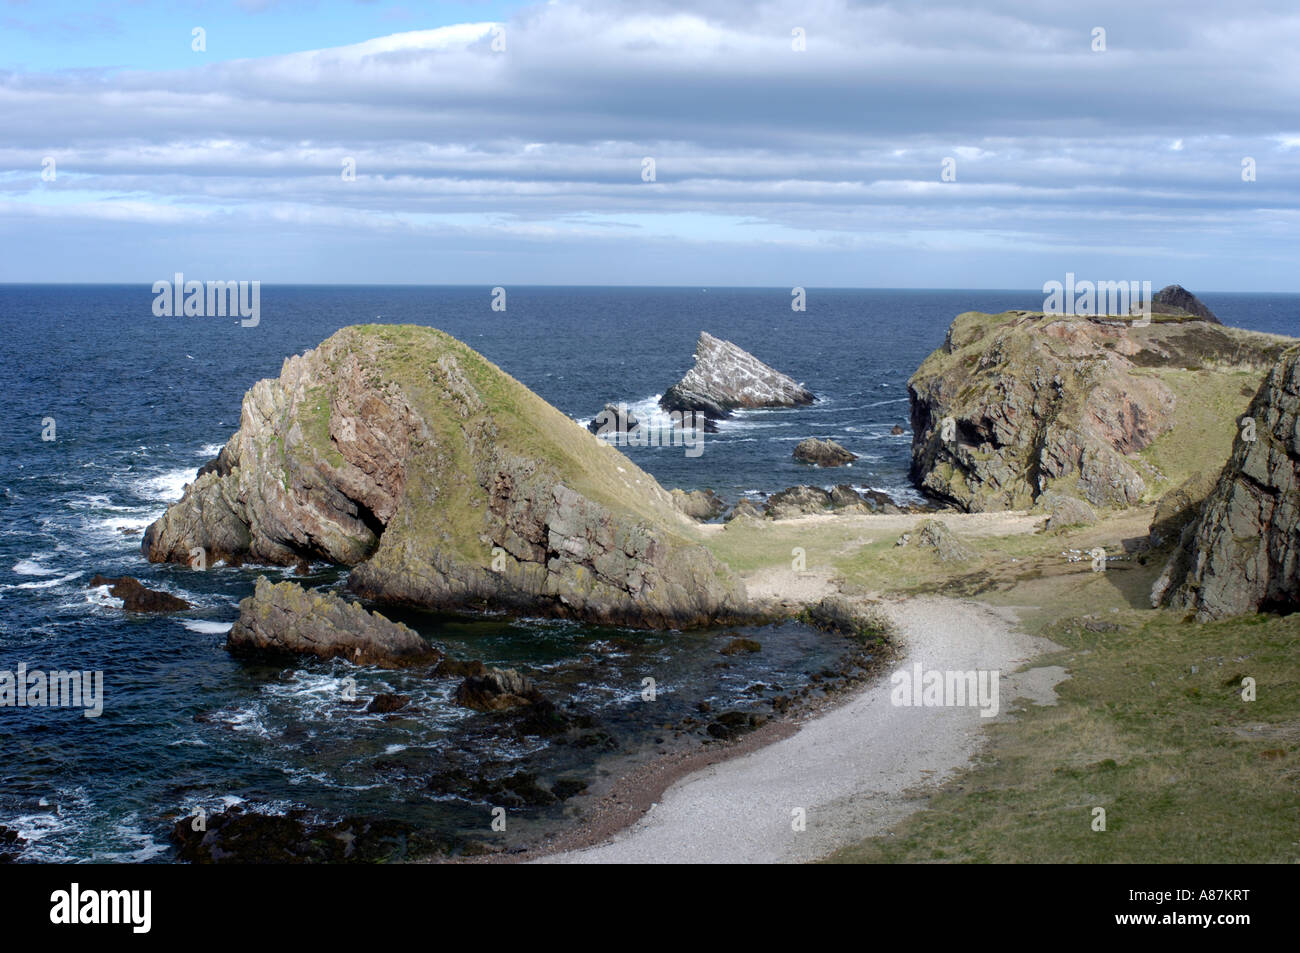 Portknockie côte pittoresque robuste de roches et de plages donne sur le Moray Firth dans la région de Grampian Ecosse Banque D'Images